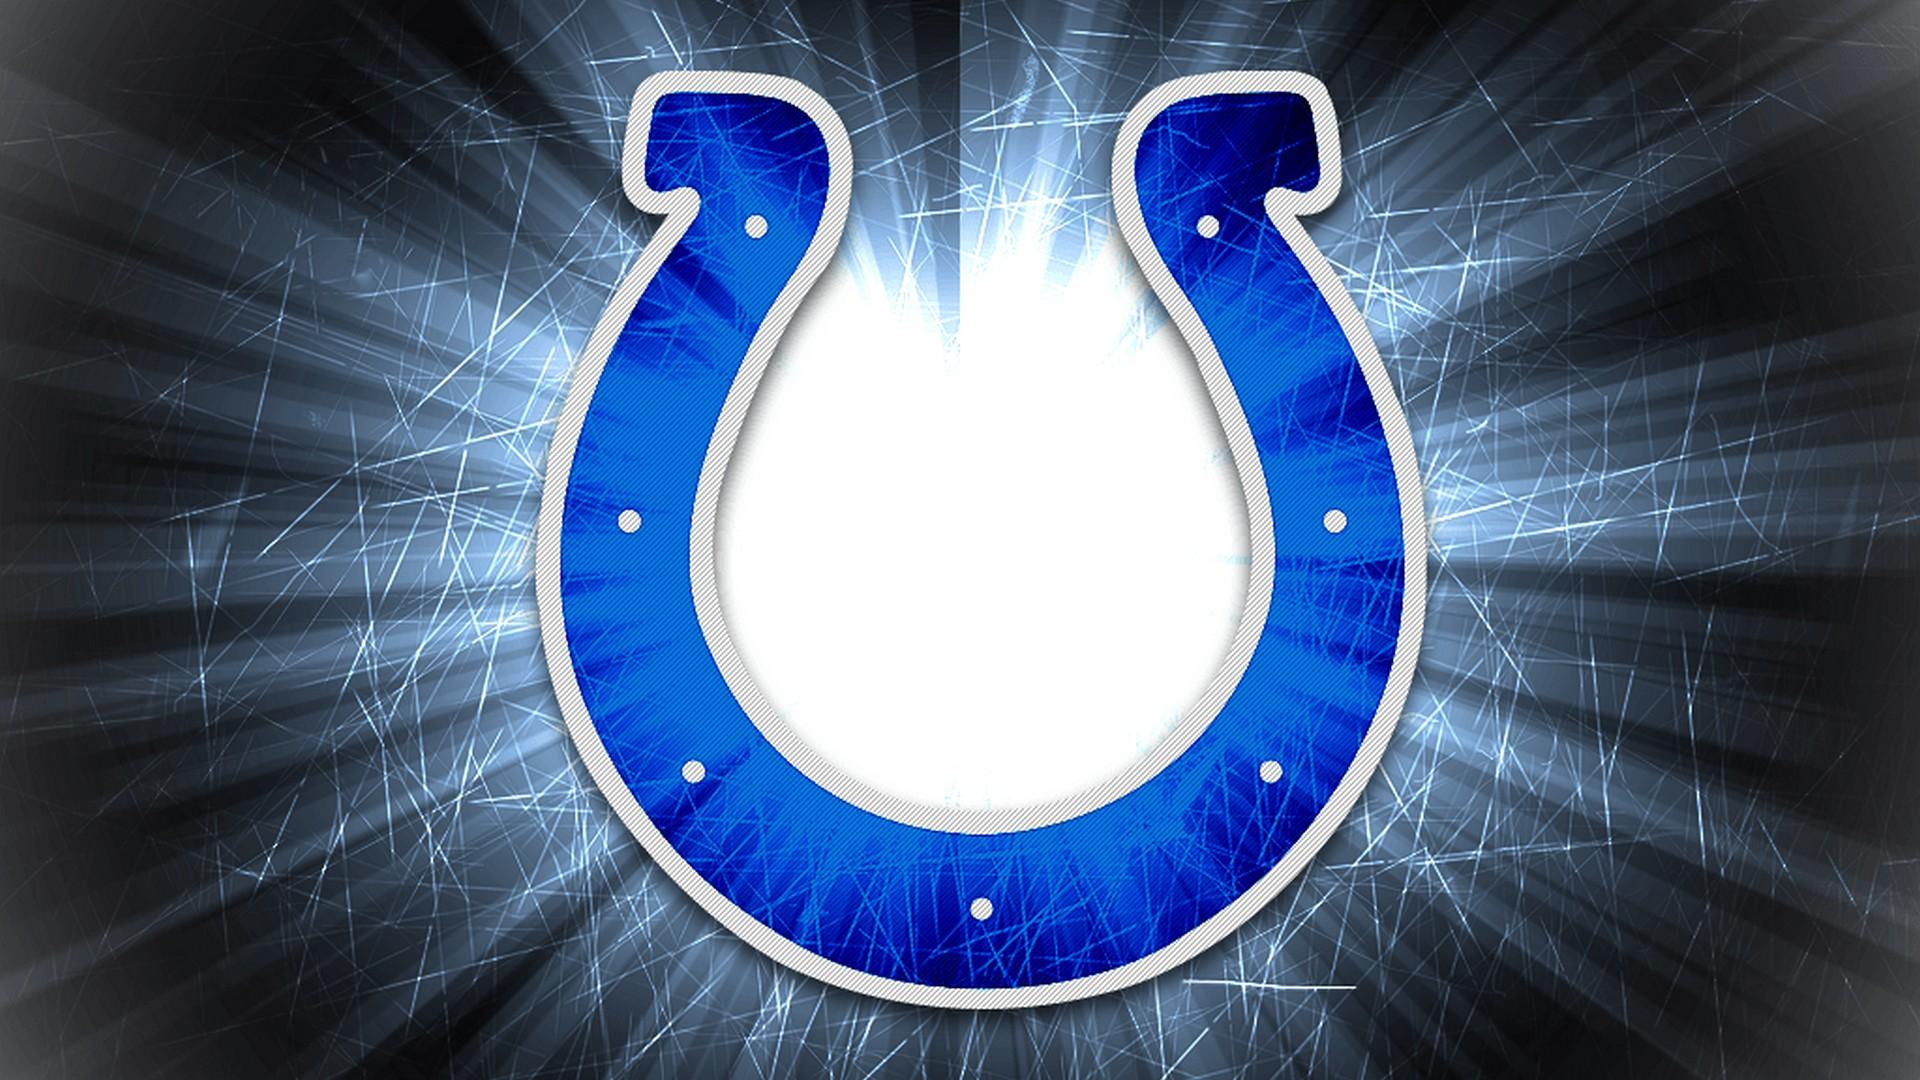 Wallpaper Desktop Indianapolis Colts HD NFL Football Wallpaper